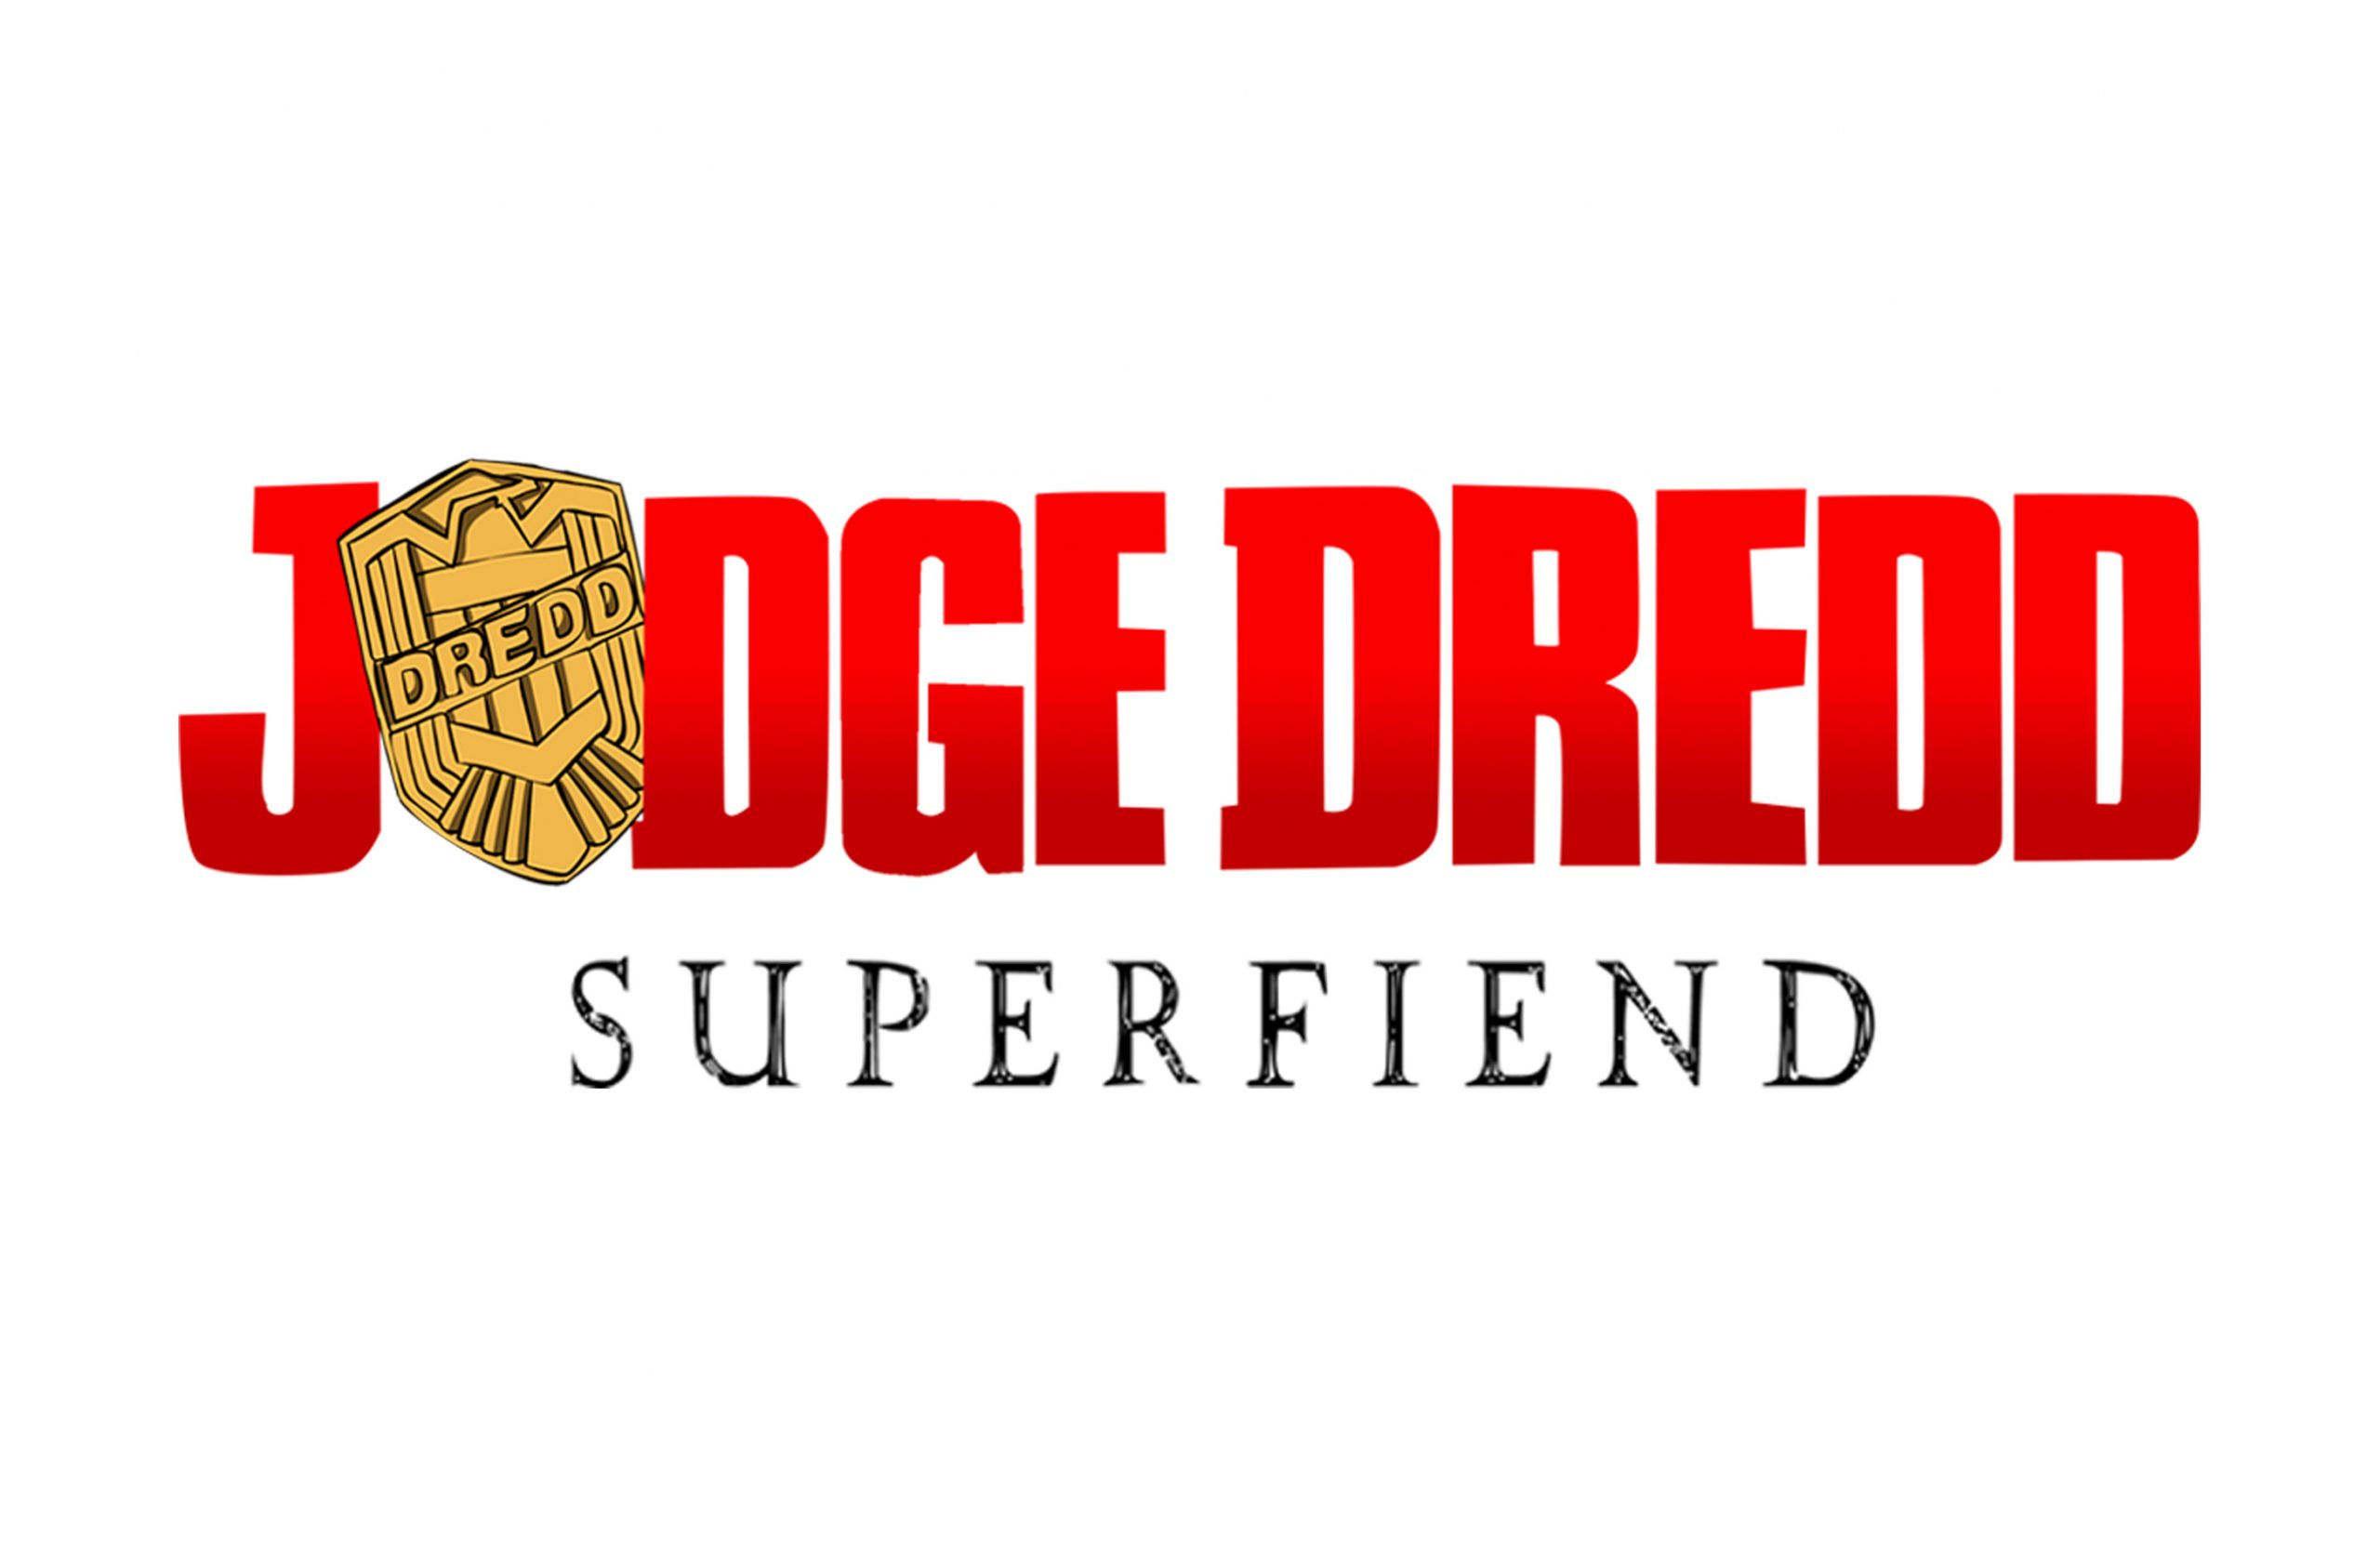 Judge-Dredd-Superfiend-logo